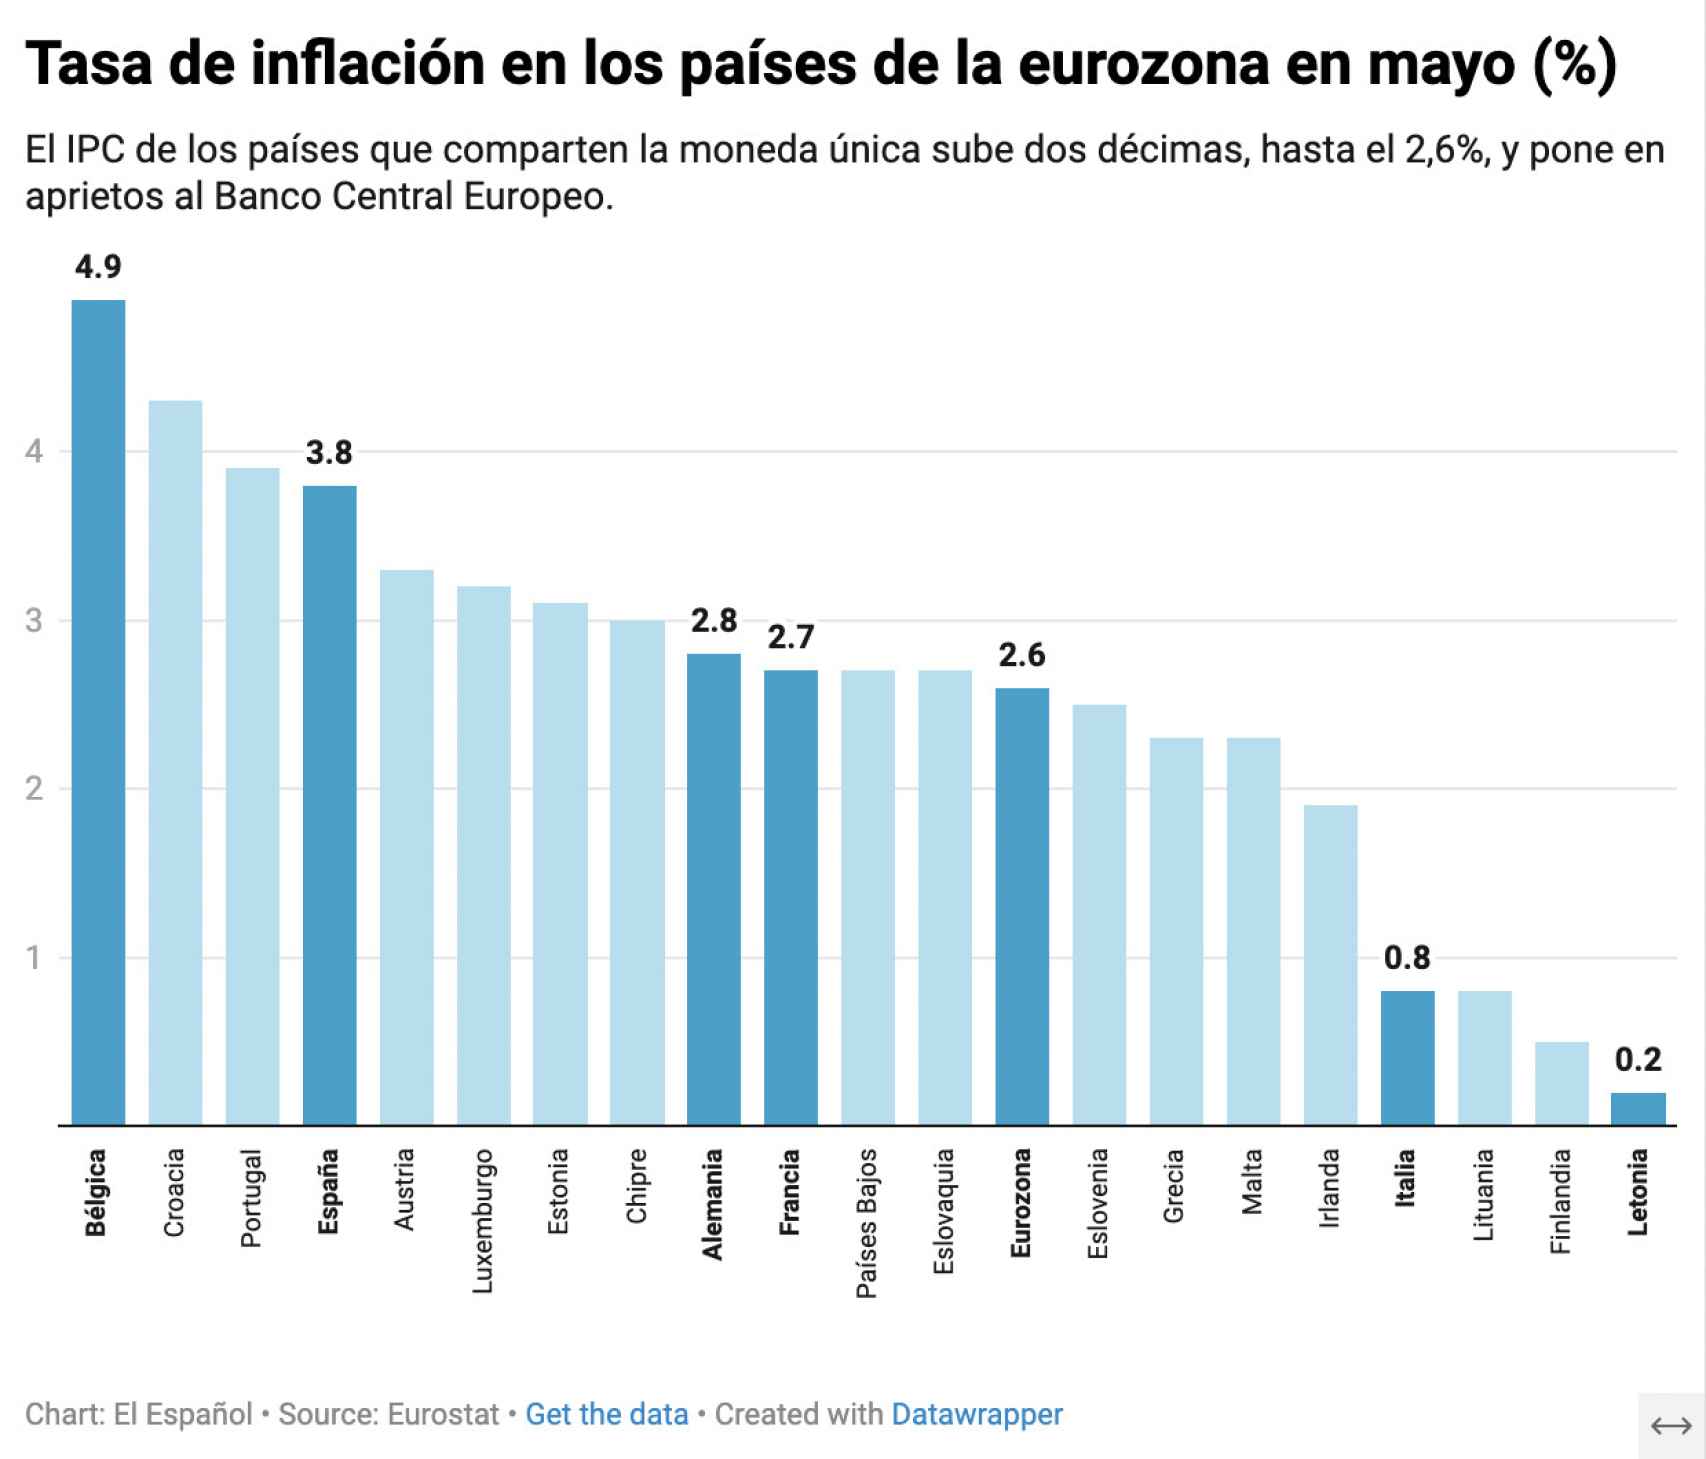 Tasa de inflación en los países de la eurozona en mayo